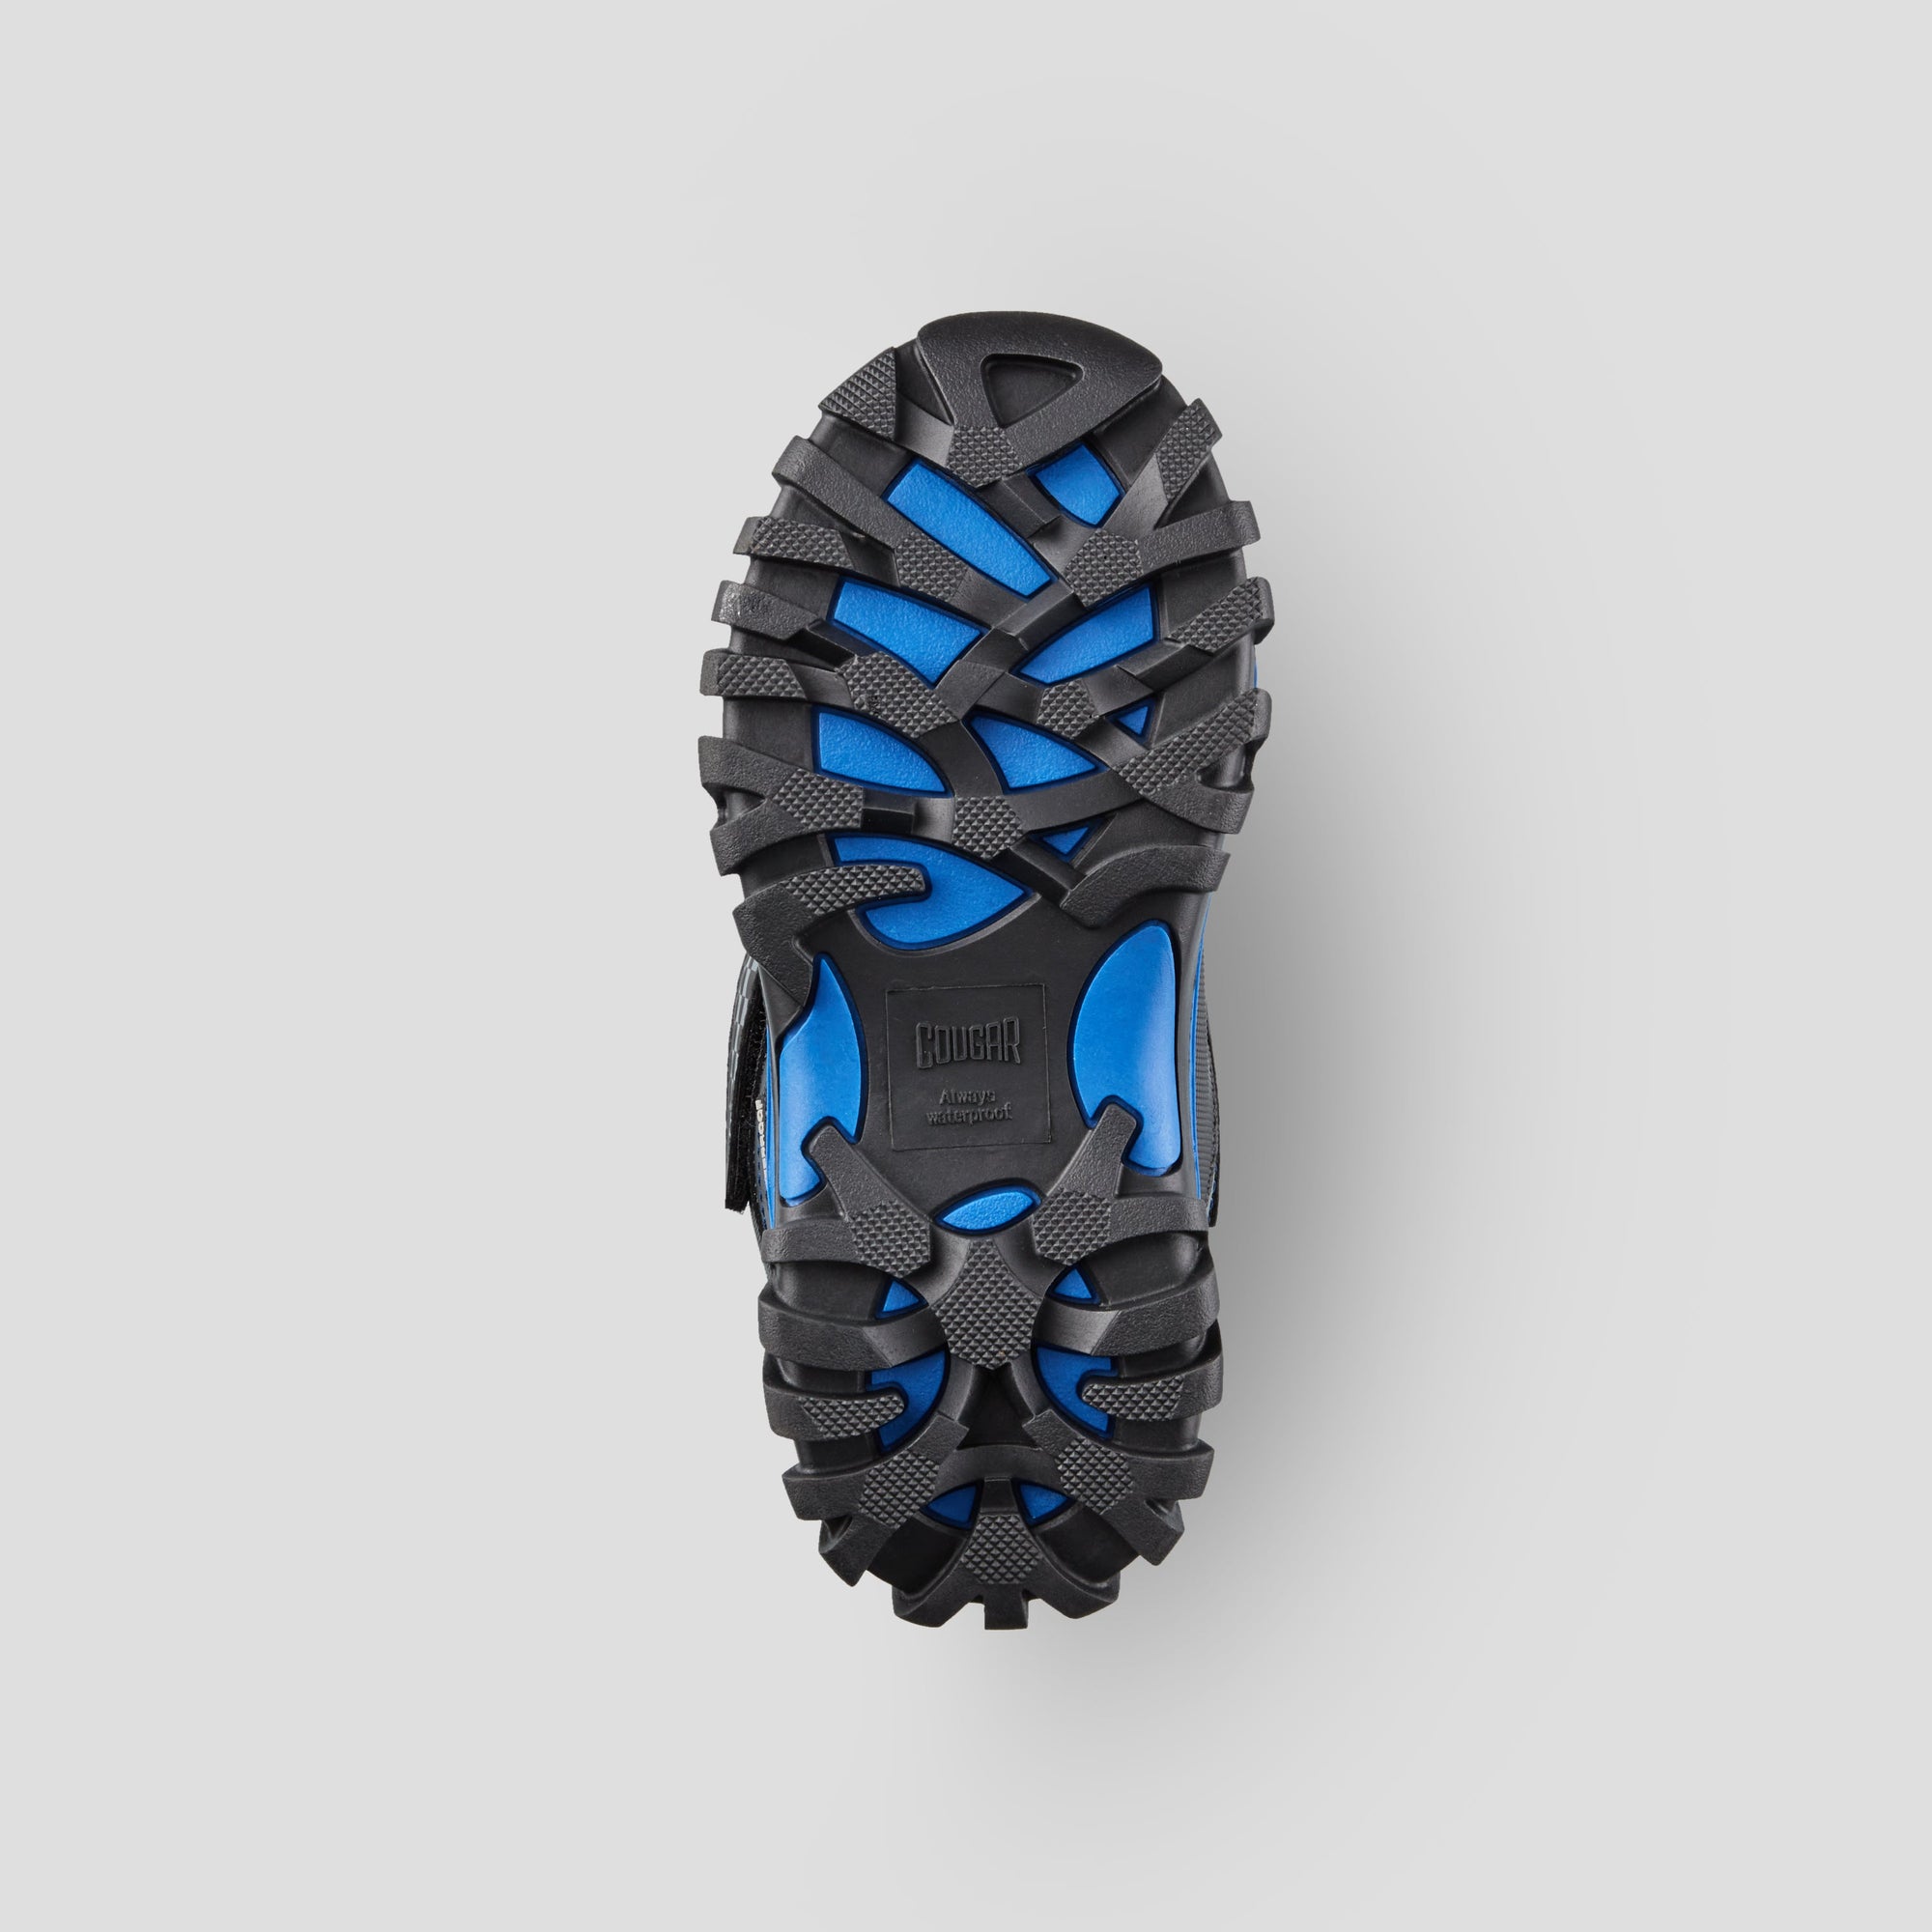 Triumph - Botte d'hiver imperméable en nylon (Junior) - Colour Black-Blue